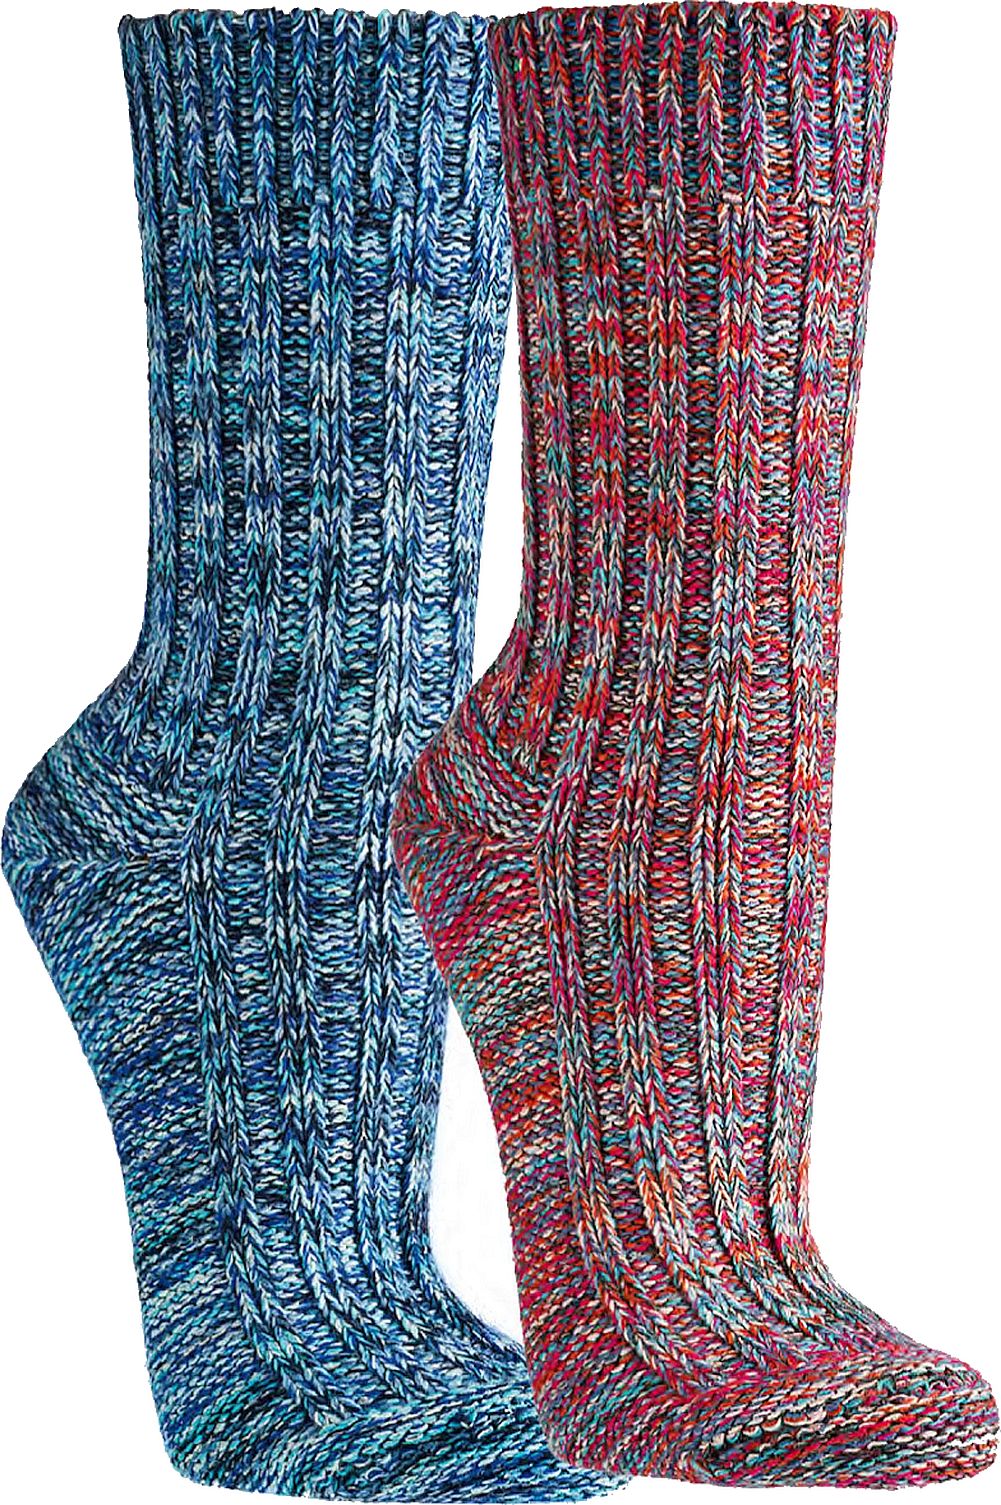  Multi Colour-Baumwoll-Socken  für Teenager, Damen und Herren schöne dicke Qualität   3 Paar